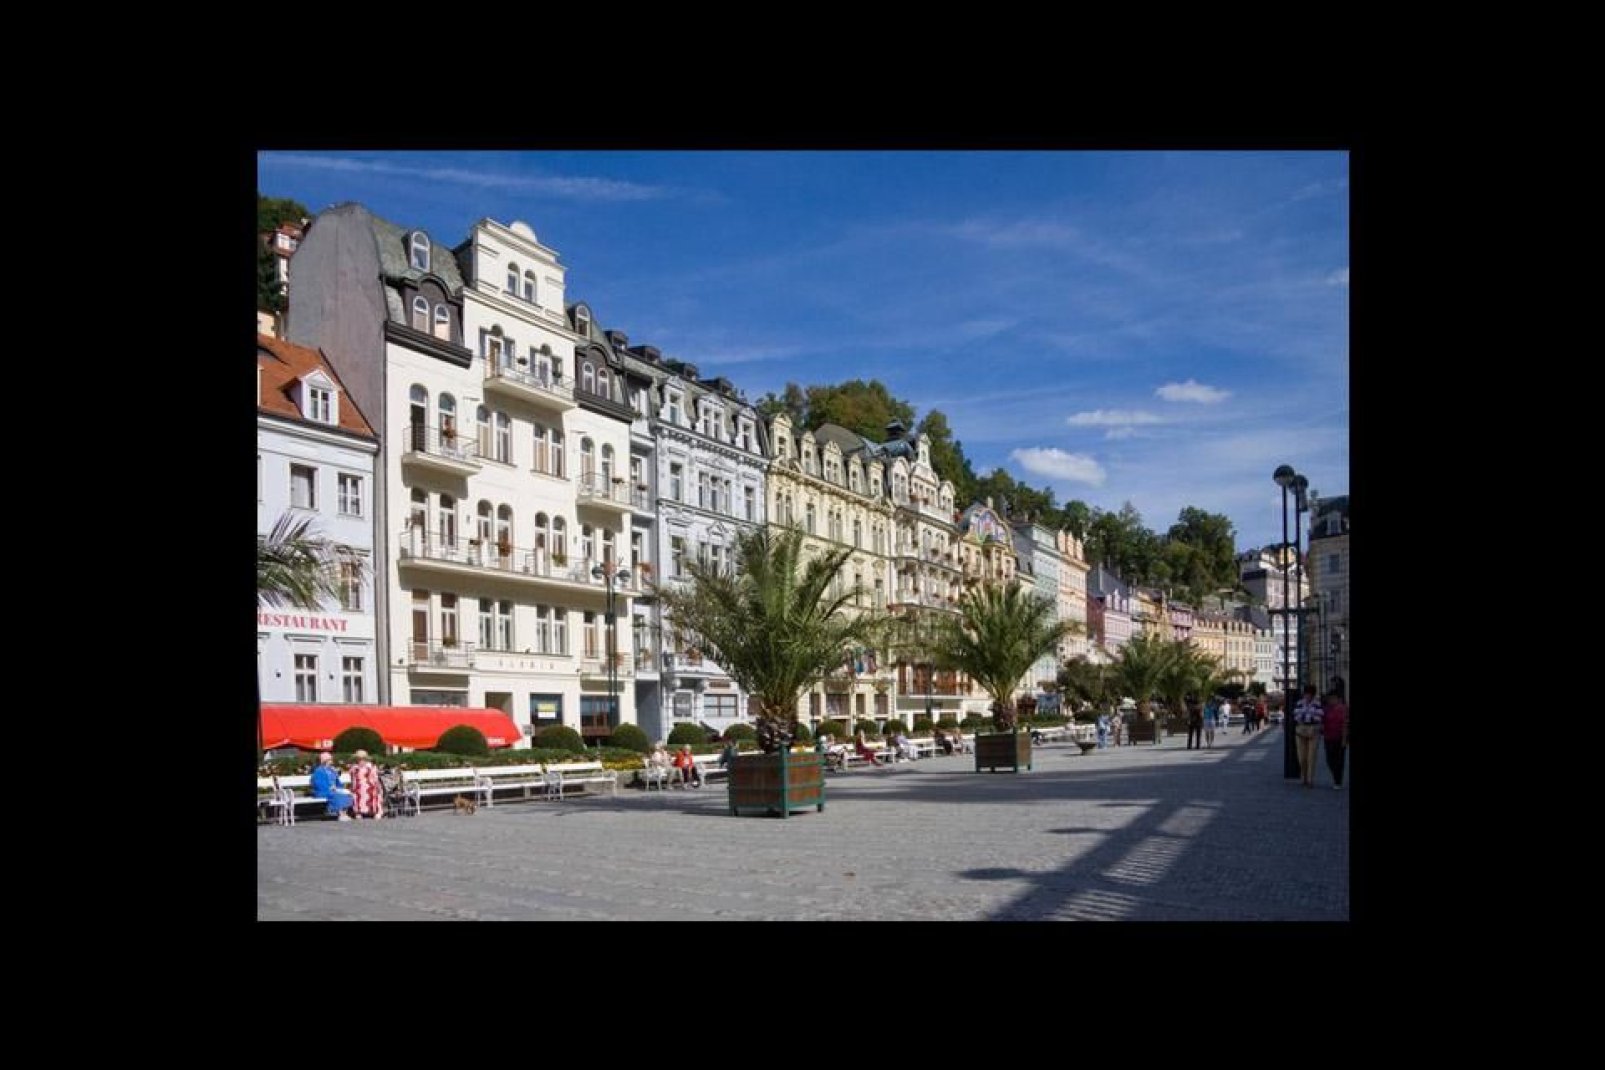 Ein Platz in Karlovy Vary, oder Karlsbad. Diese Stadt wurde an einer Mineralquelle errichtet.